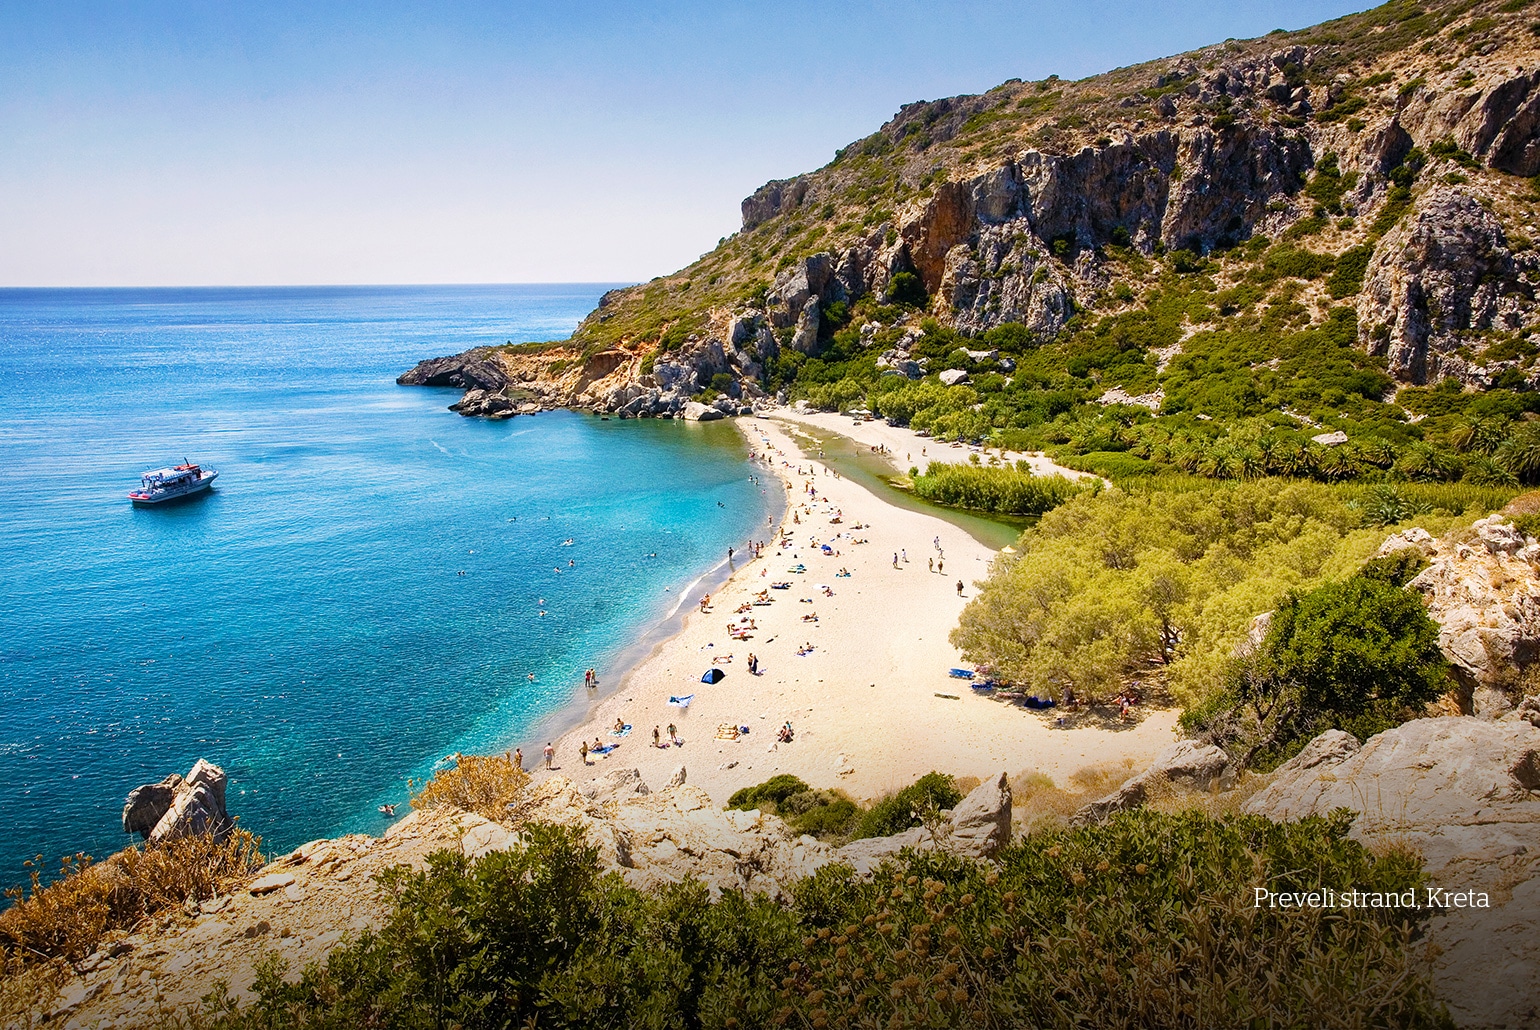 Preveli strand, Kreta